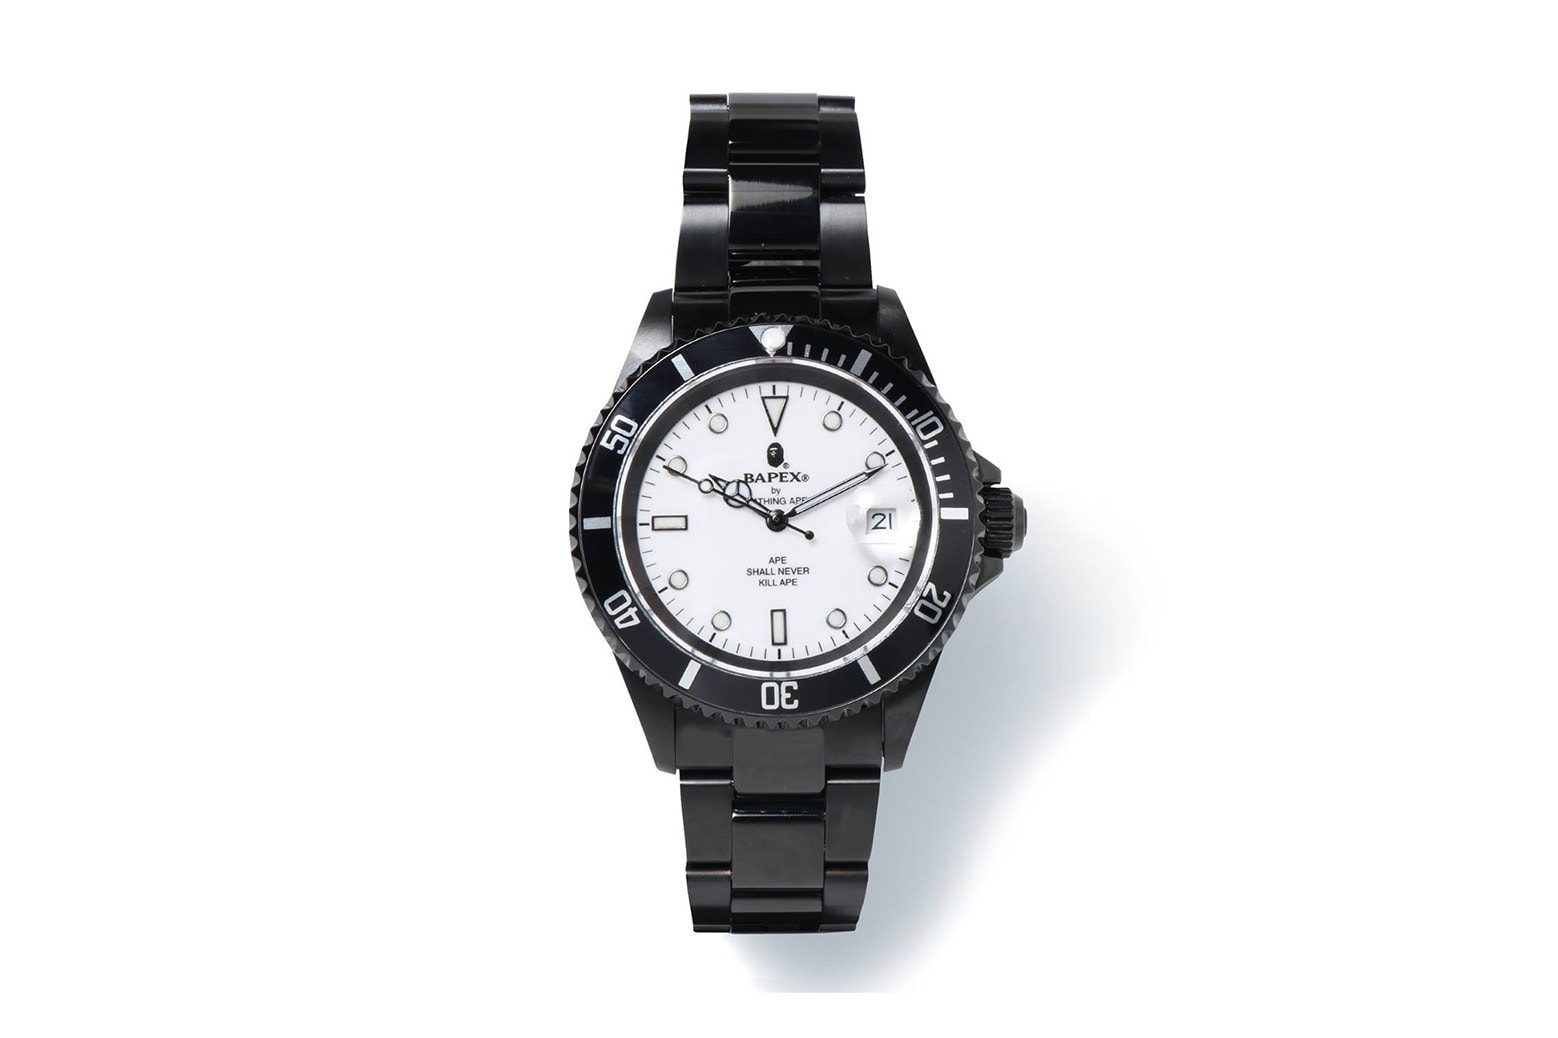 BAPE® のエレガントな腕時計シリーズ Type 1 BAPEX® に新たな3色が登場 ベイプ  A BATHING APE® ア ベイシング エイプ 時計 ウォッチ リスト 腕時計 プレゼント 男性 クリスマス ハイプ ビースト hypebeast